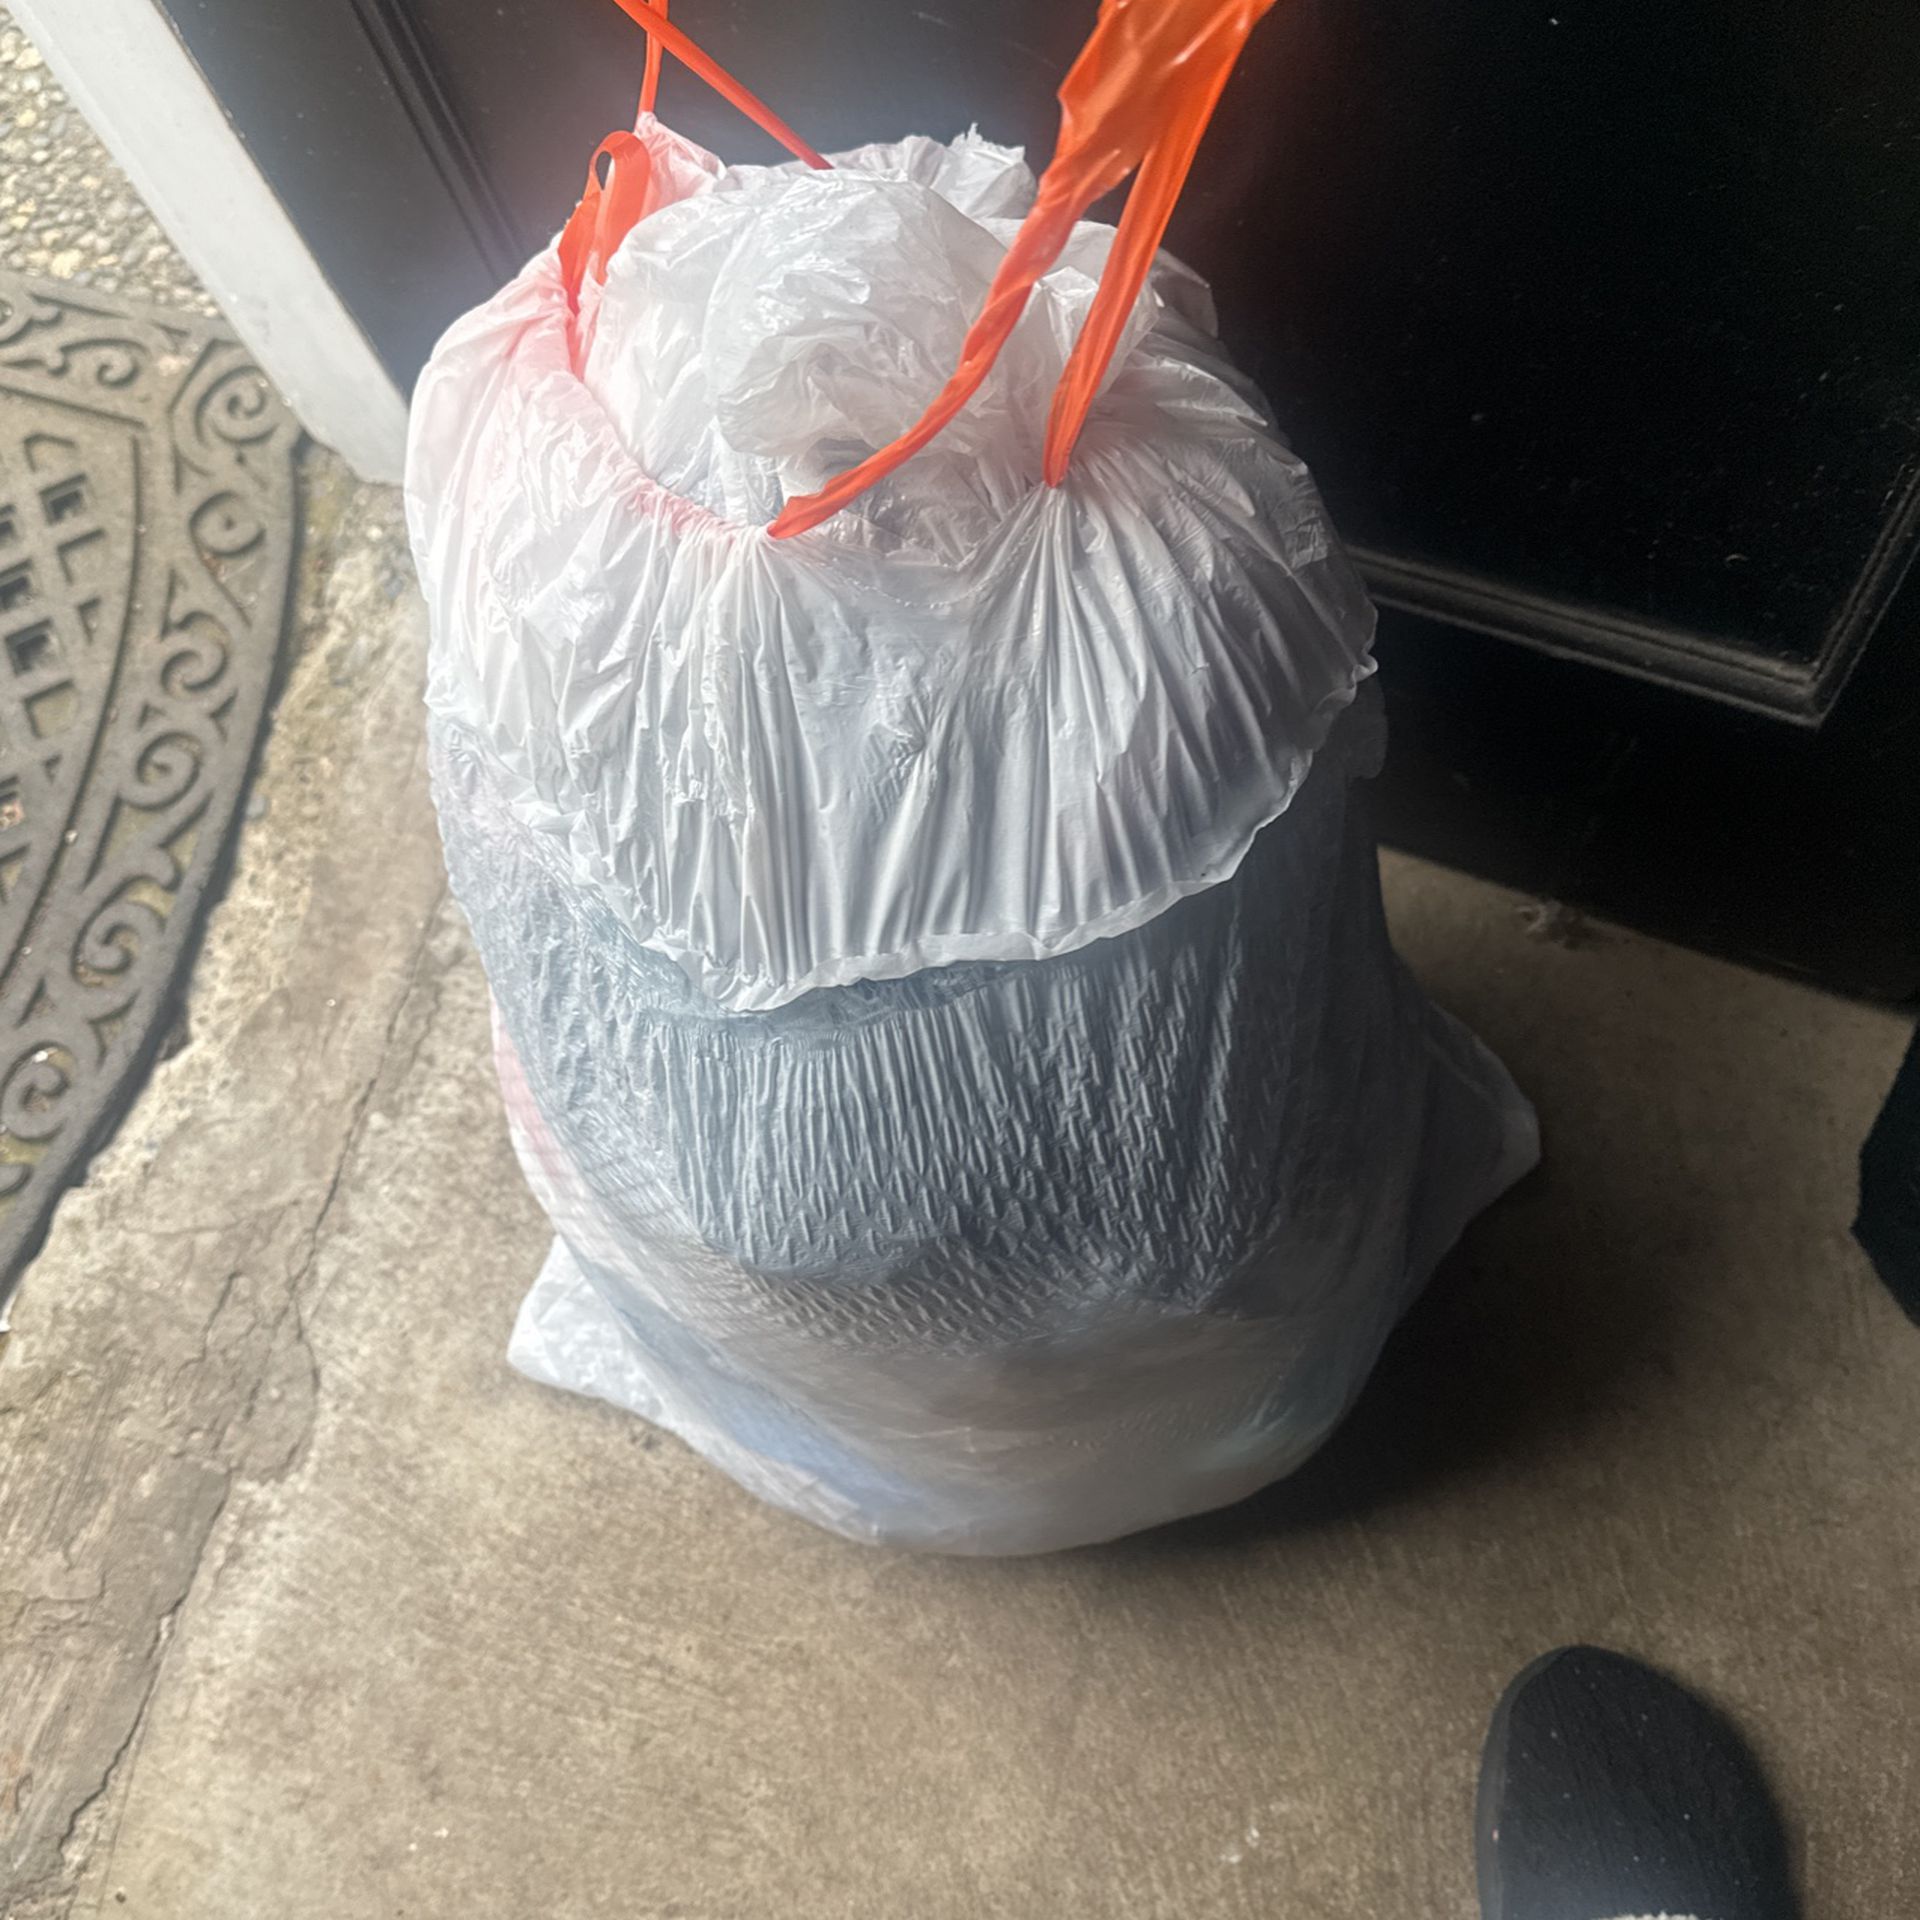 Free Garbage Bag Full Of Boys Clothing(pending)